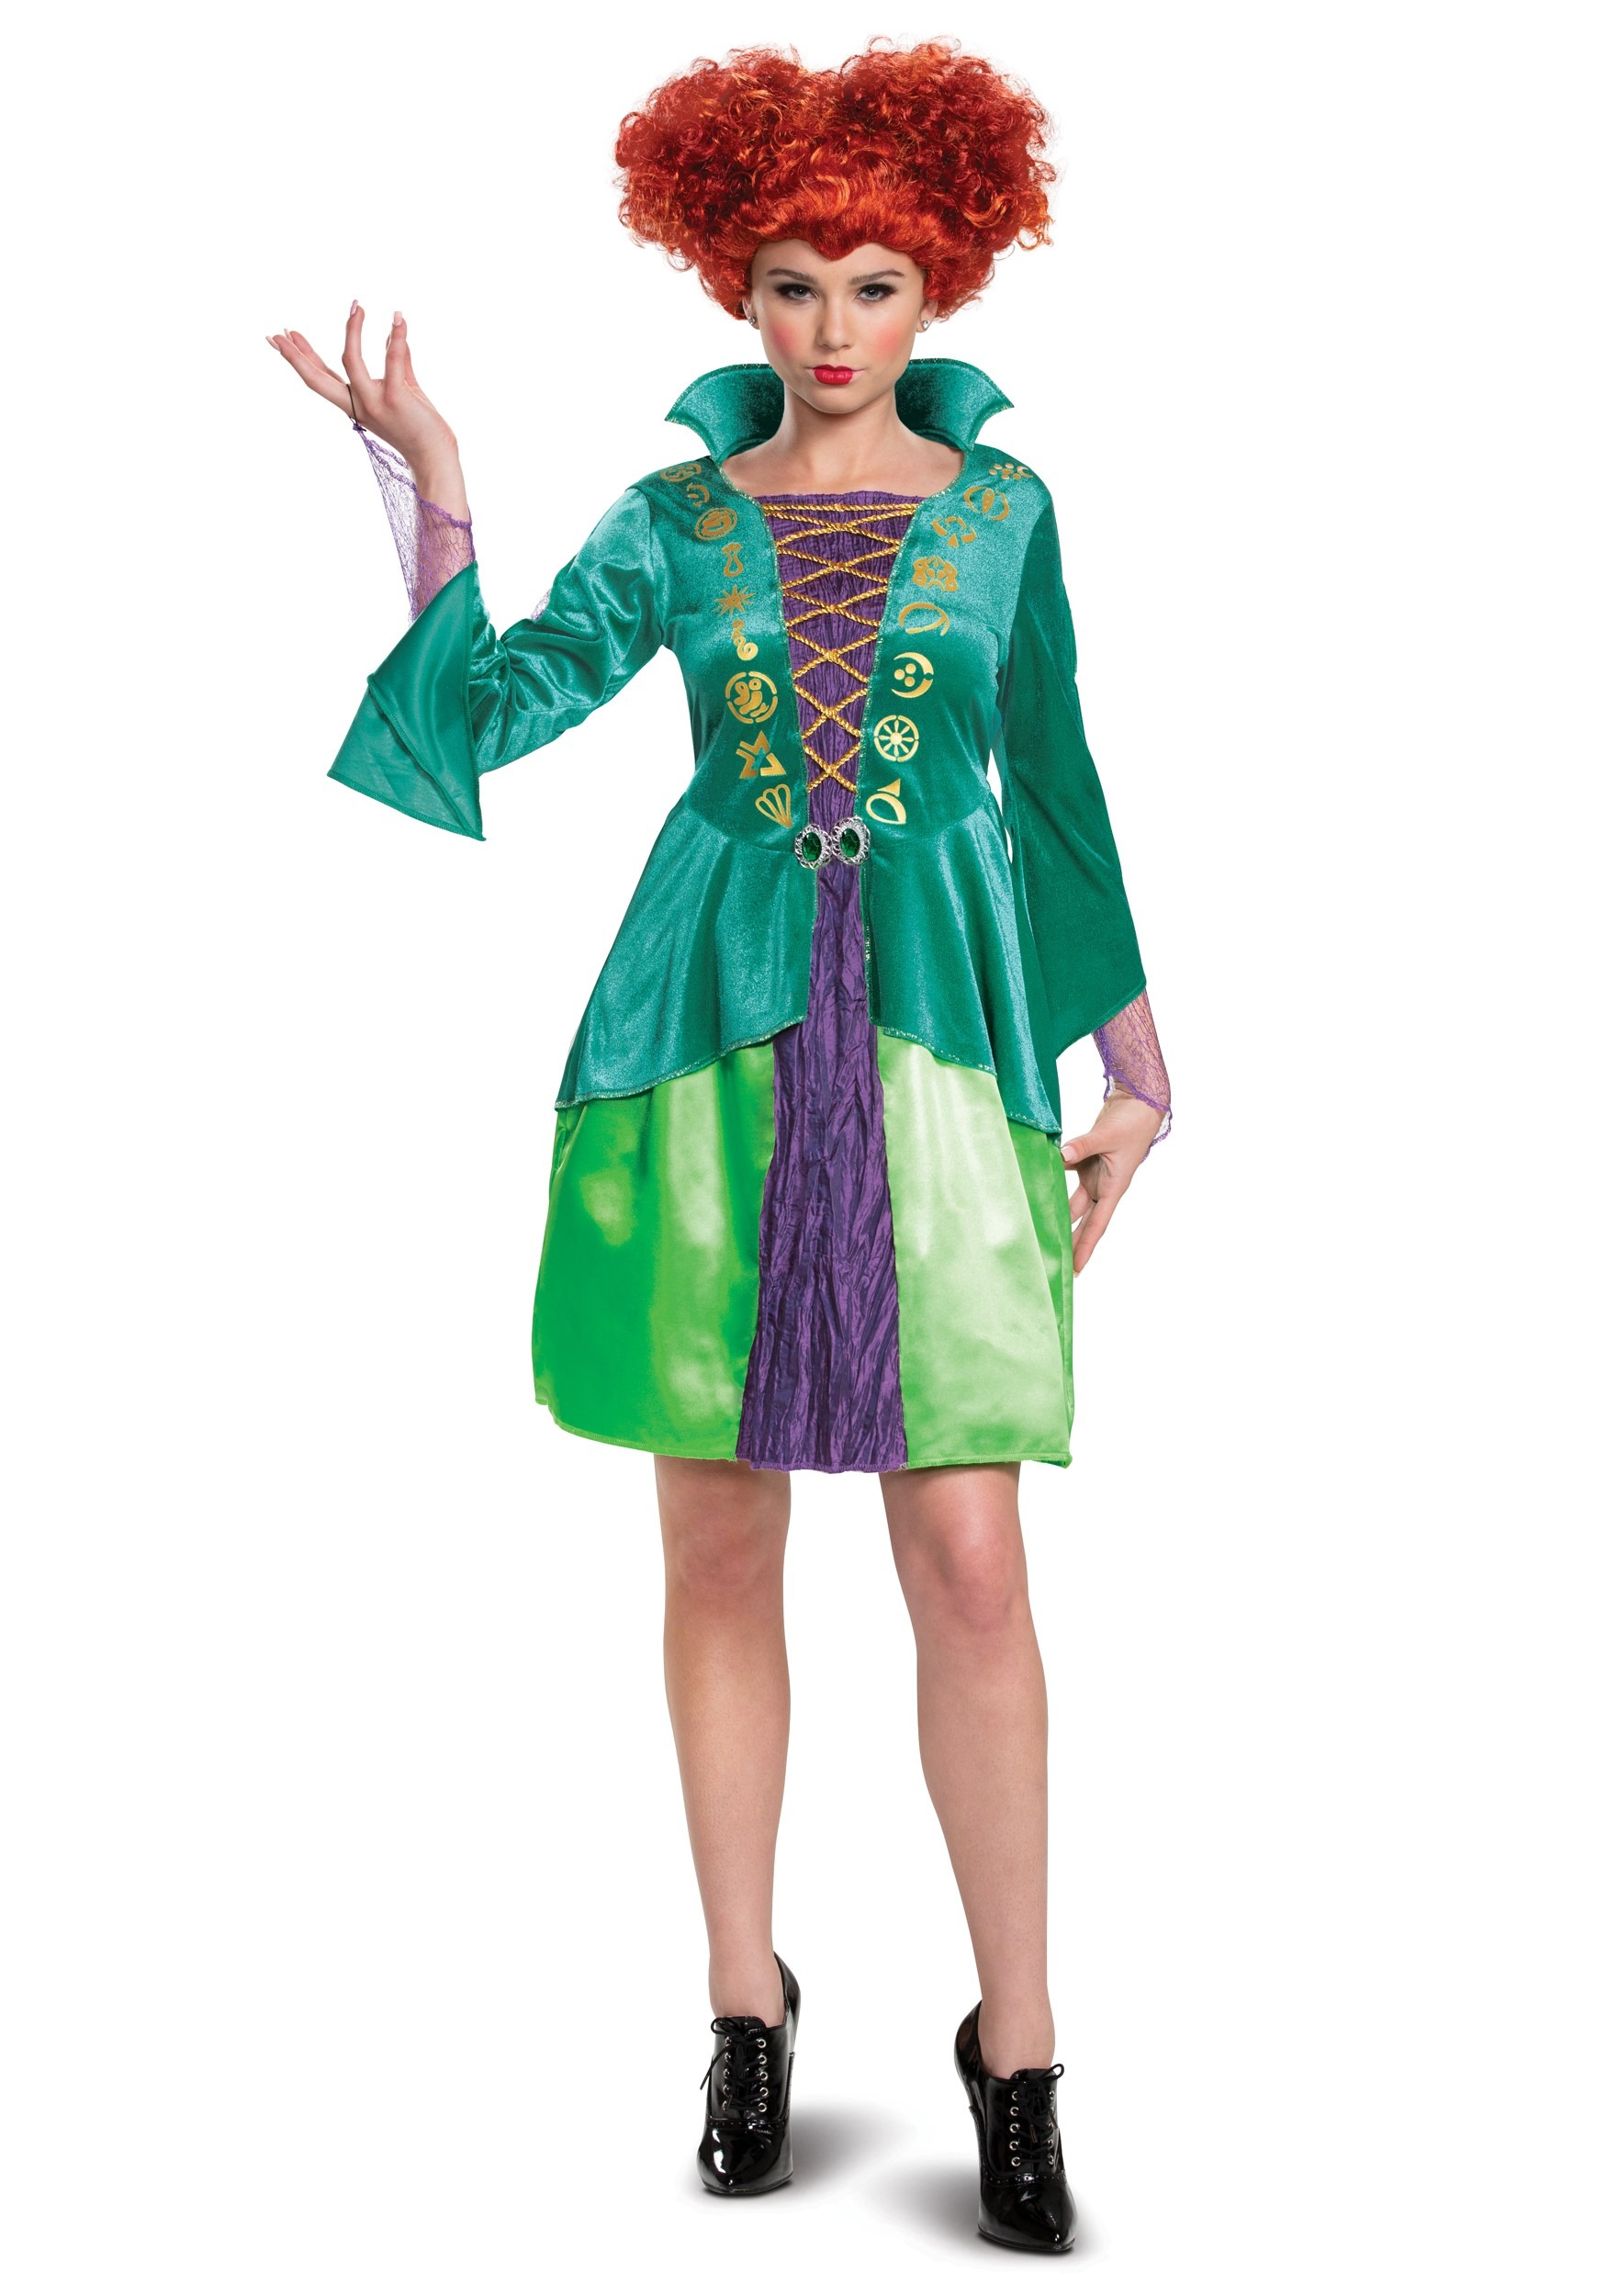 Image of Adult Disney Hocus Pocus Classic Wini Costume Dress | Disney Costumes ID DI15191-XL